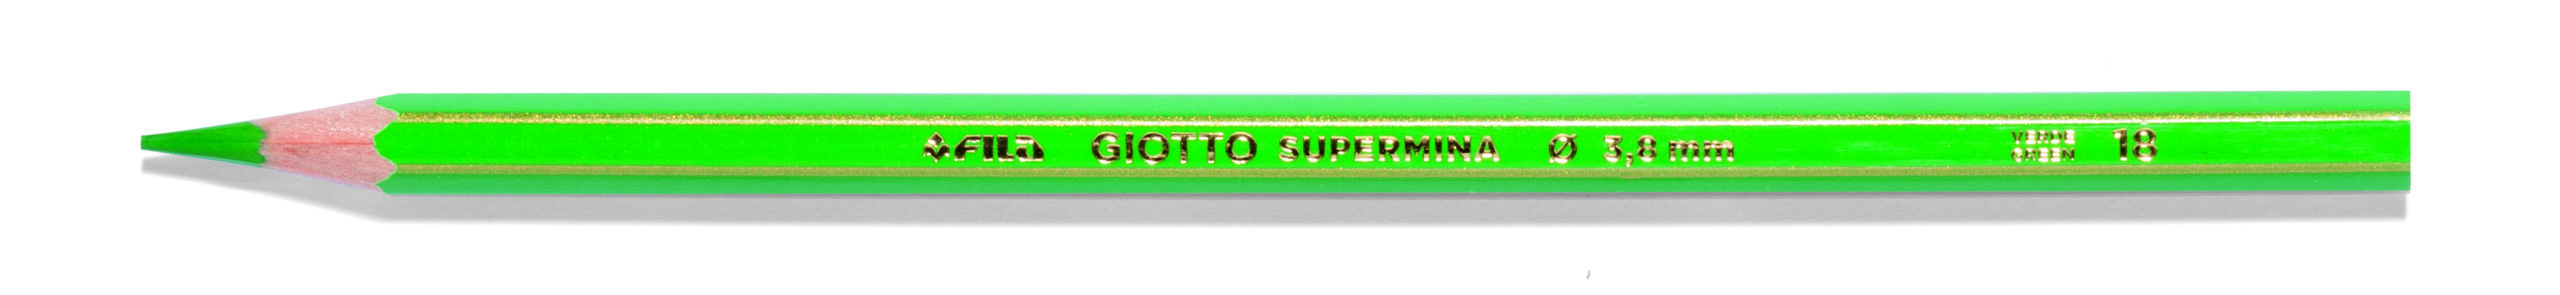 Pastello Giotto Supermina Monocolore Verde 18 23901800 36246a